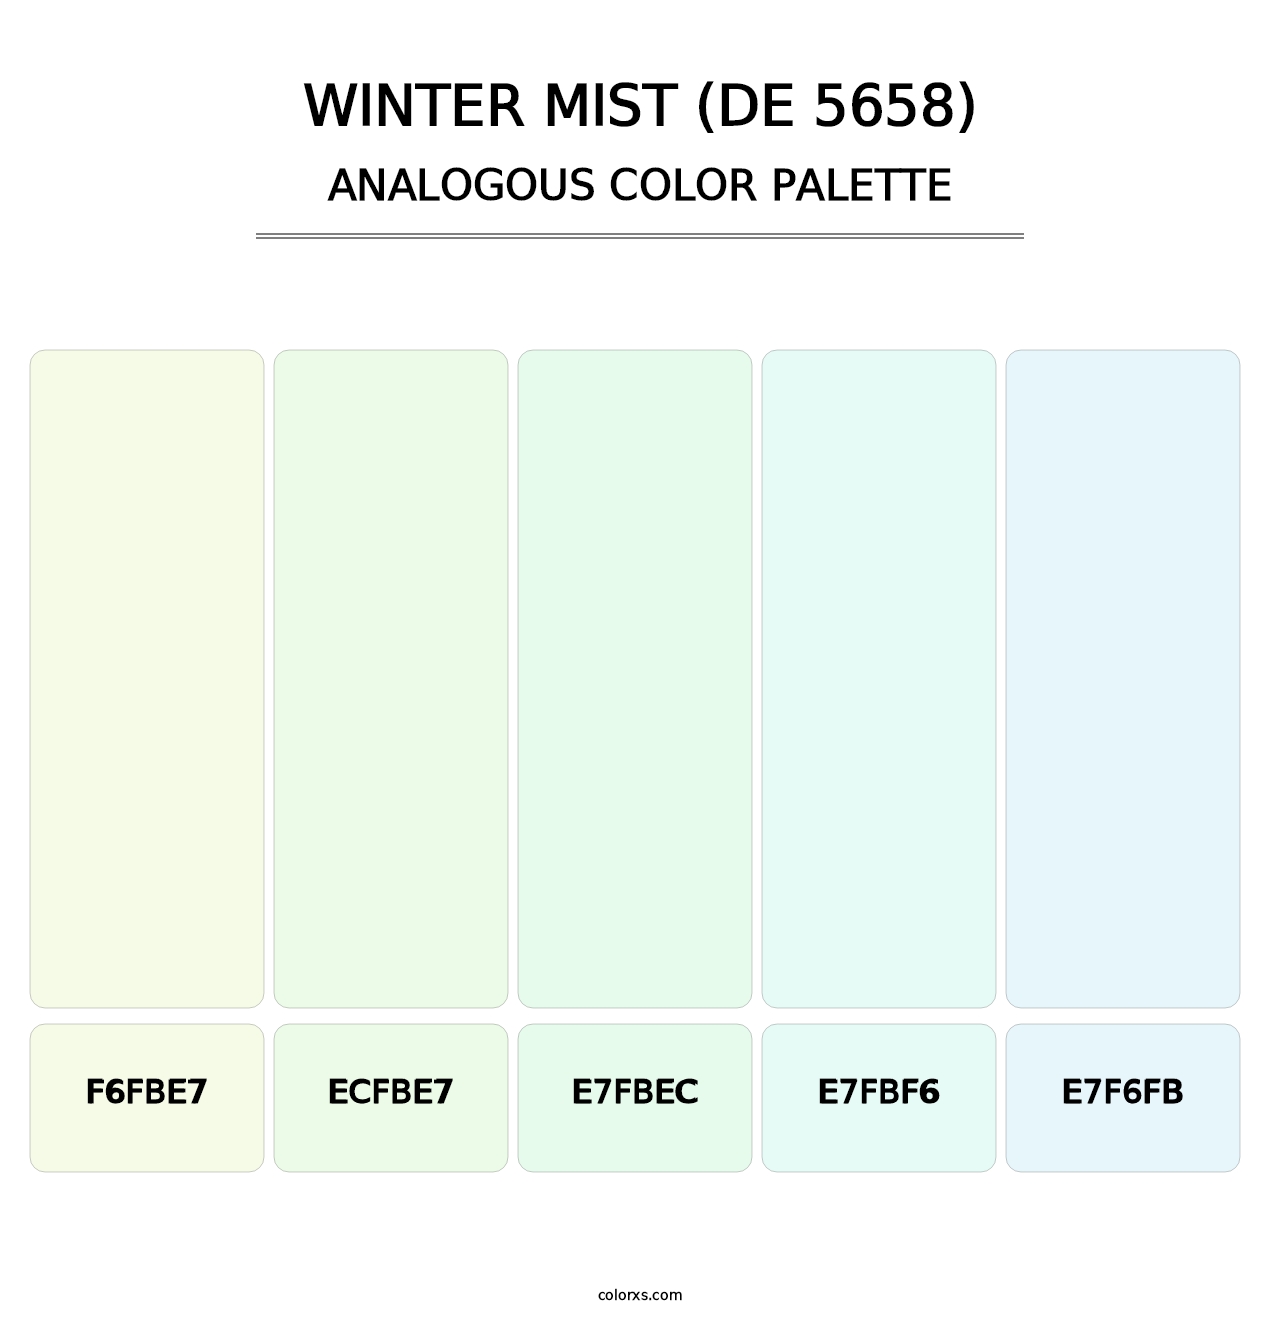 Winter Mist (DE 5658) - Analogous Color Palette